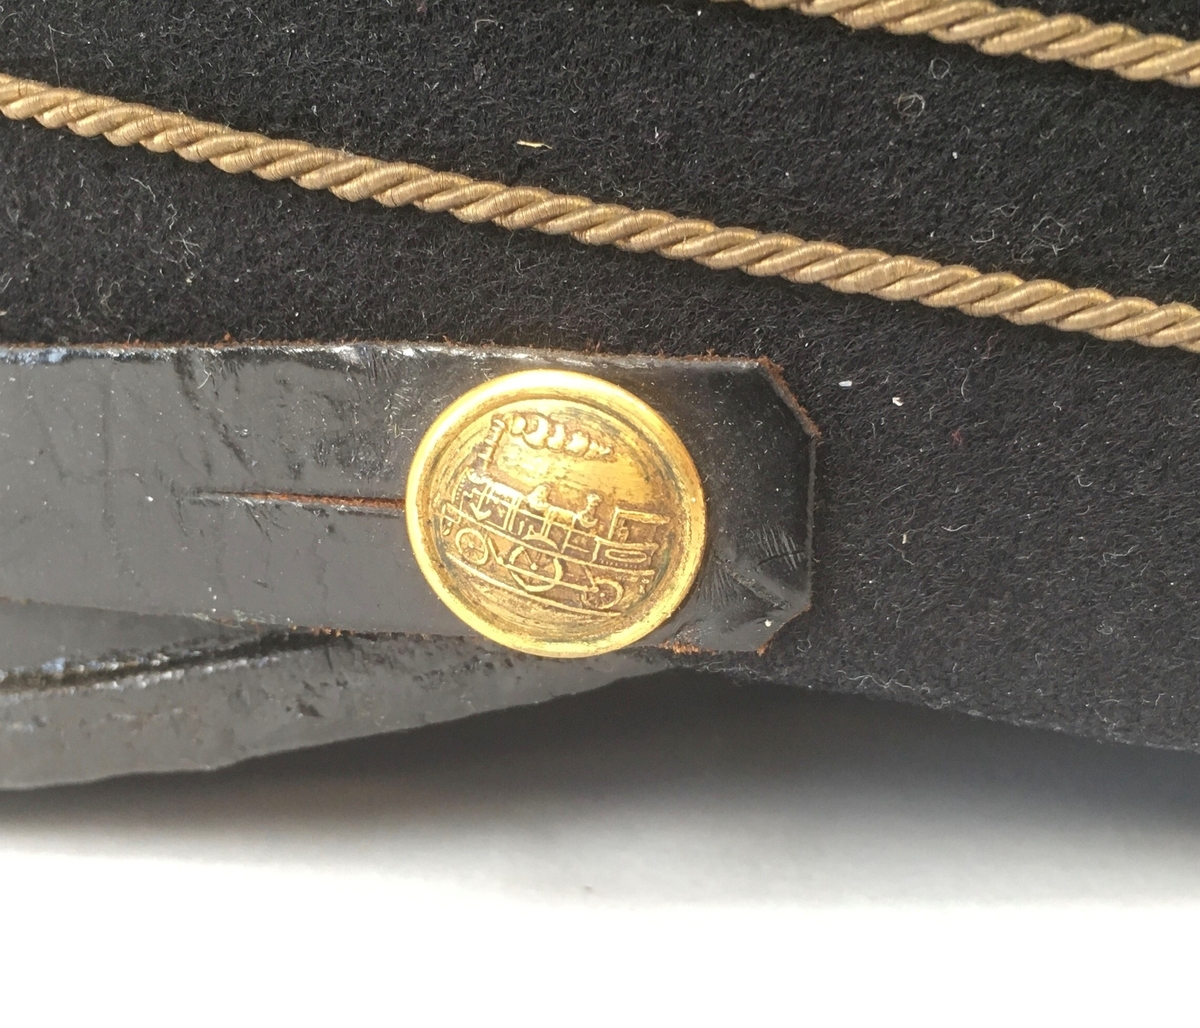 Uniformsmössa av 1899 års modell, av fint svart kläde med kort lackskärm. Mössan har tre guldfärgade galoner, samt blåemaljerad mössknapp med guldfärgat A-lok och guldfärgat vinghjul av 1921 års uniformsreglemente för Enskild järnväg (EJ). Förutom vinghjulet är alla delar av 1899 års modell. Mössbandet är av läder, fastsatt med guldfärgade mösstränsknappar med A-lok.
Mössan är fodrad med svart bomullssatäng. Inuti sitter en fastsytt vävt etikett från Rörströms & Co, Stockholm.